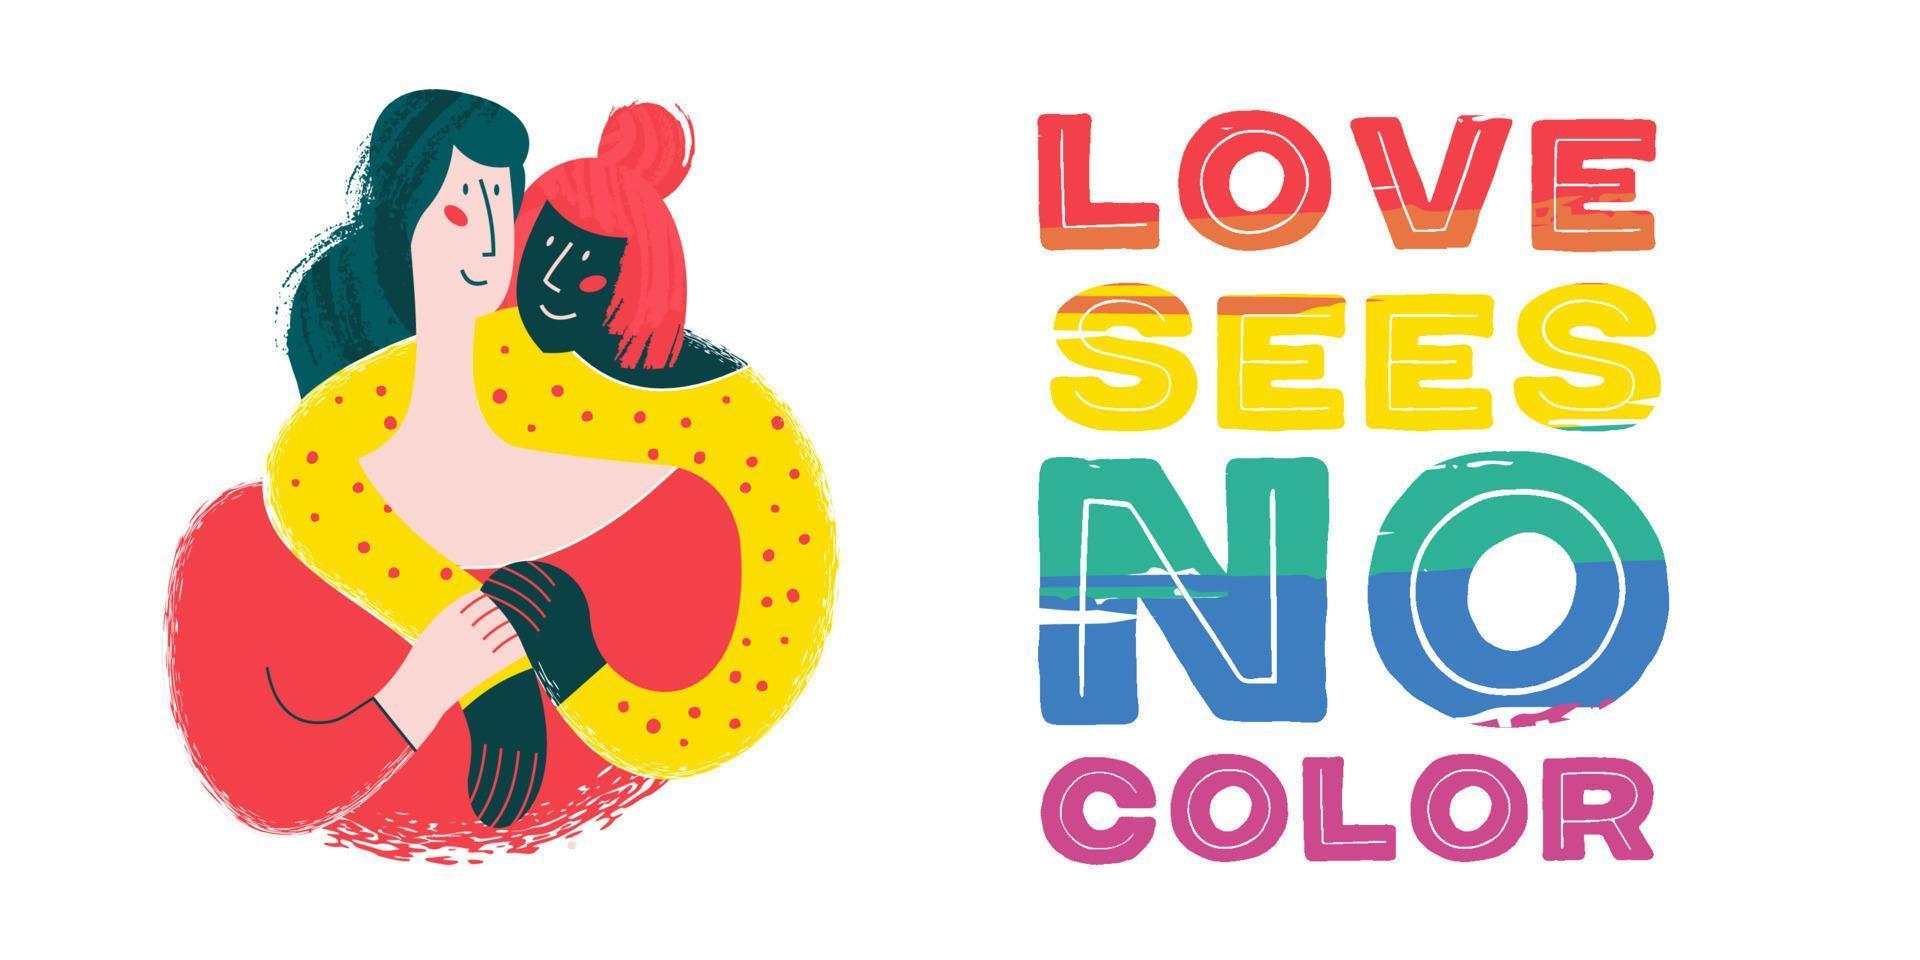 kärlek ser ingen färg. regnbågsbokstäver är en hbt-symbol. lyckligt lesbiskt par, vita och svarta flickor. vektor